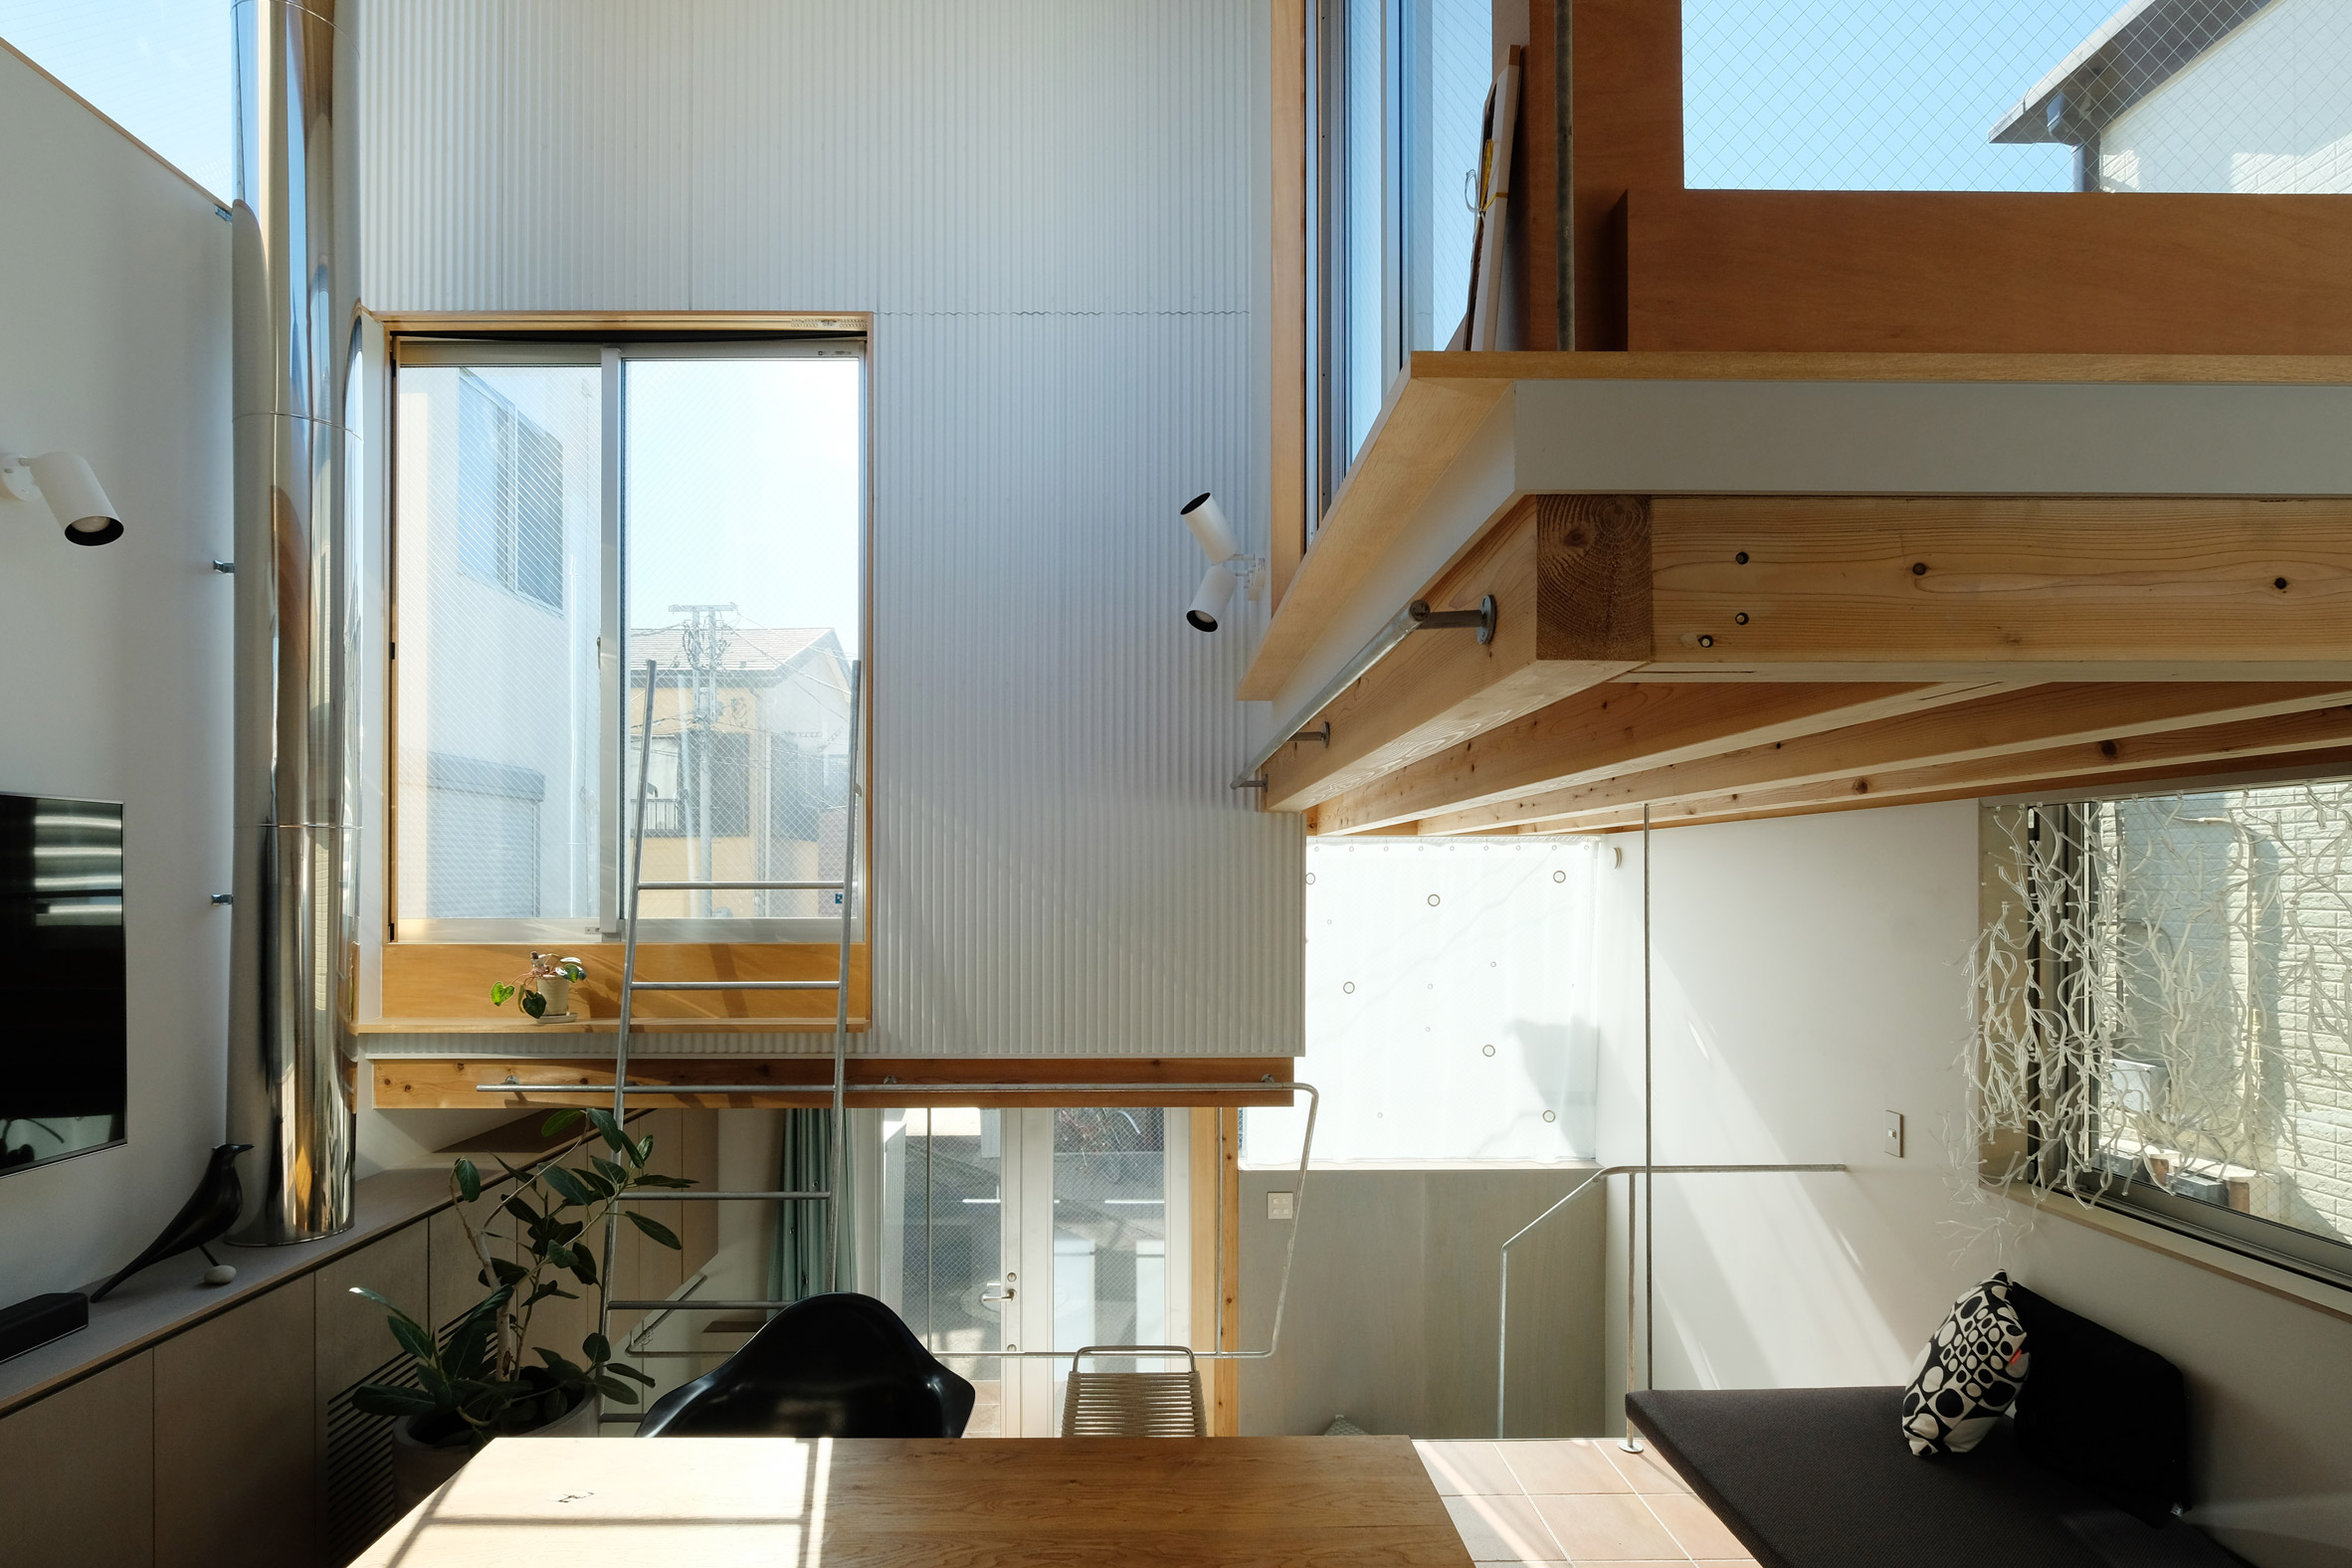 RUMAH 26 METER PERSEGI DI TENGAH IBU KOTA ARCHITECTURE DESIGN INTERIOR TOKYO JAPAN DSGNTALK